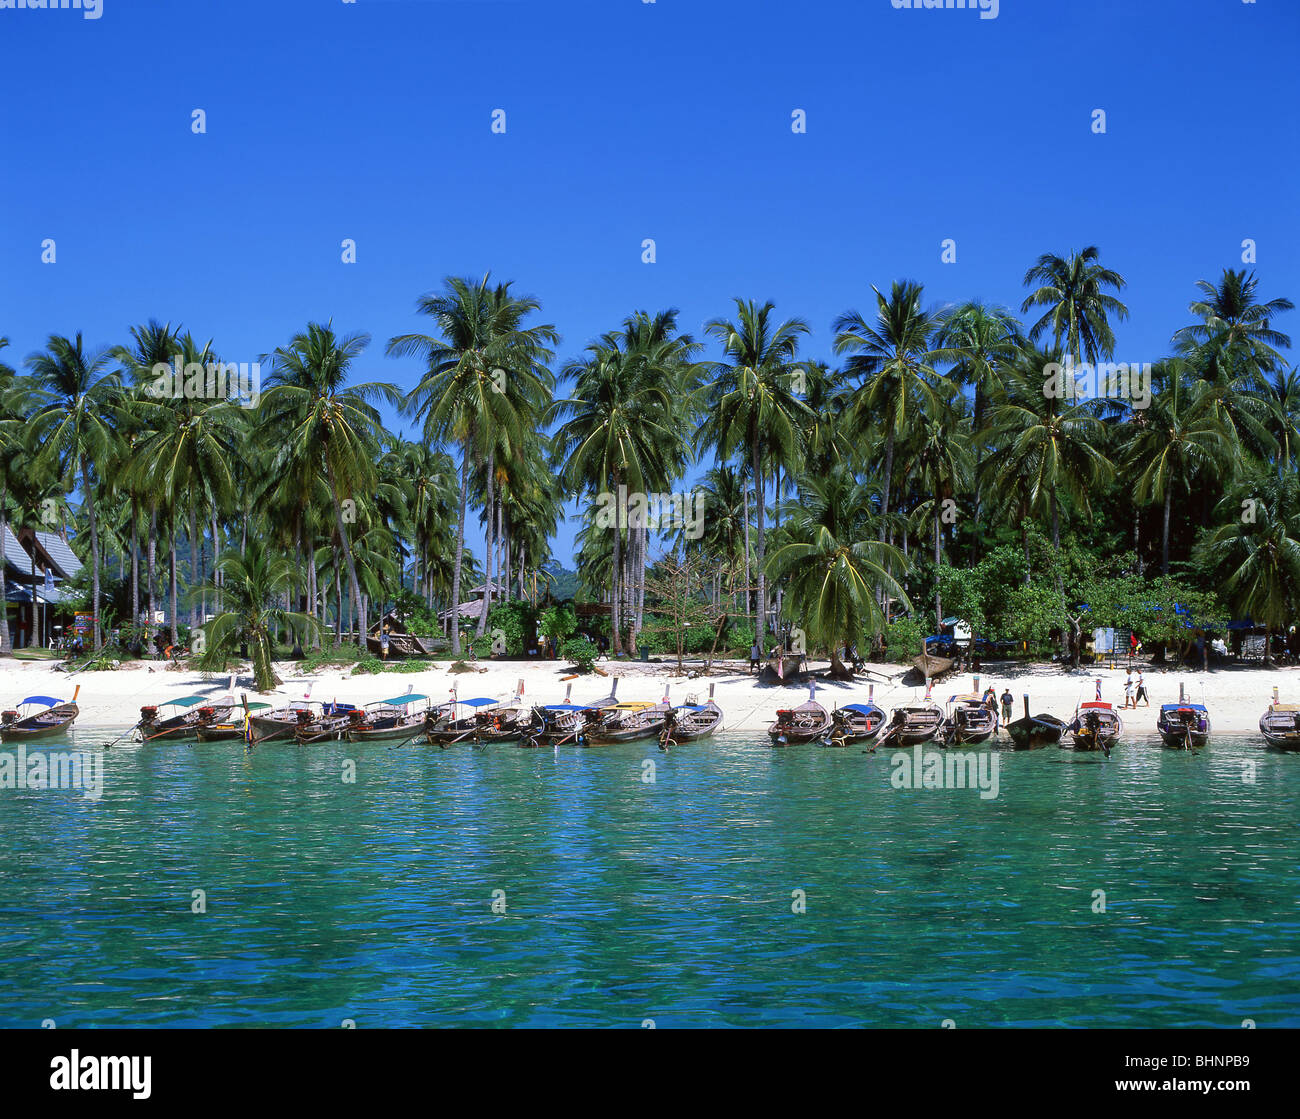 Bateaux à longue queue, Ton Sai Beach, Koh Phi Phi Don, Phi Phi Islands, province de Krabi, Thaïlande Banque D'Images